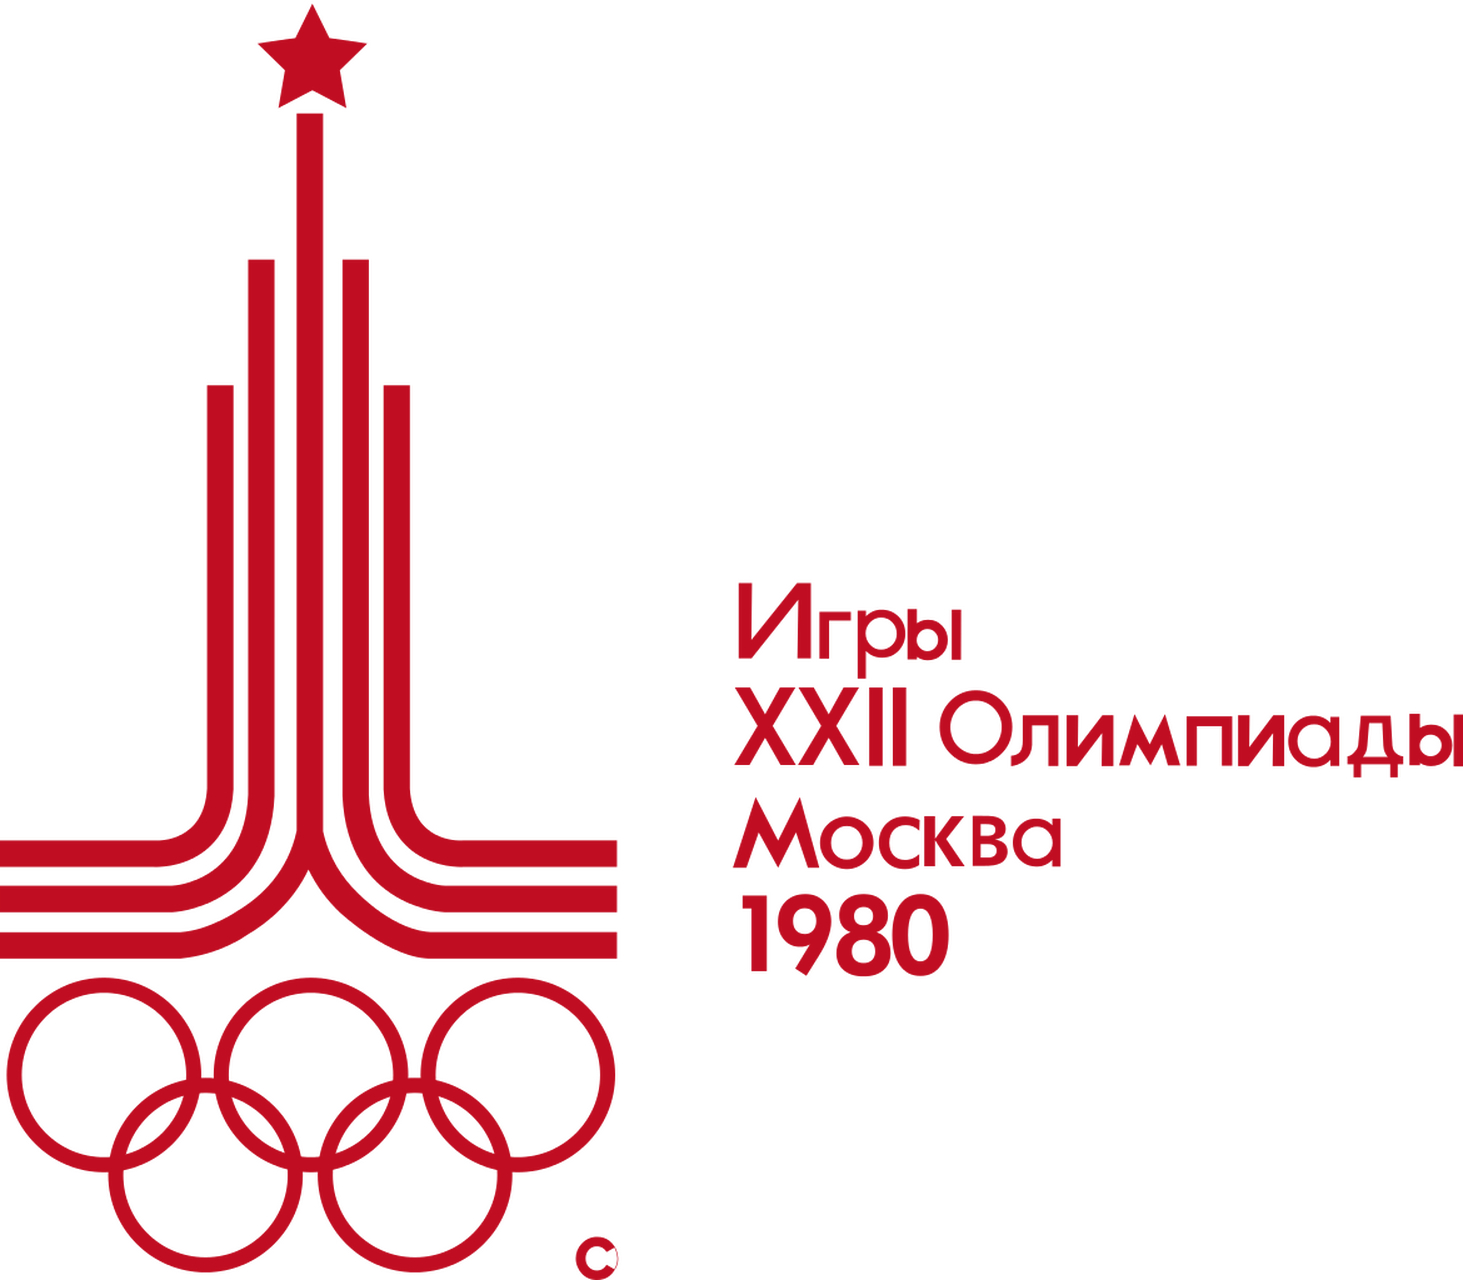 奥运会8 1980年莫斯科夏季奥运会是第22届夏季奥林匹克运动会,于1980